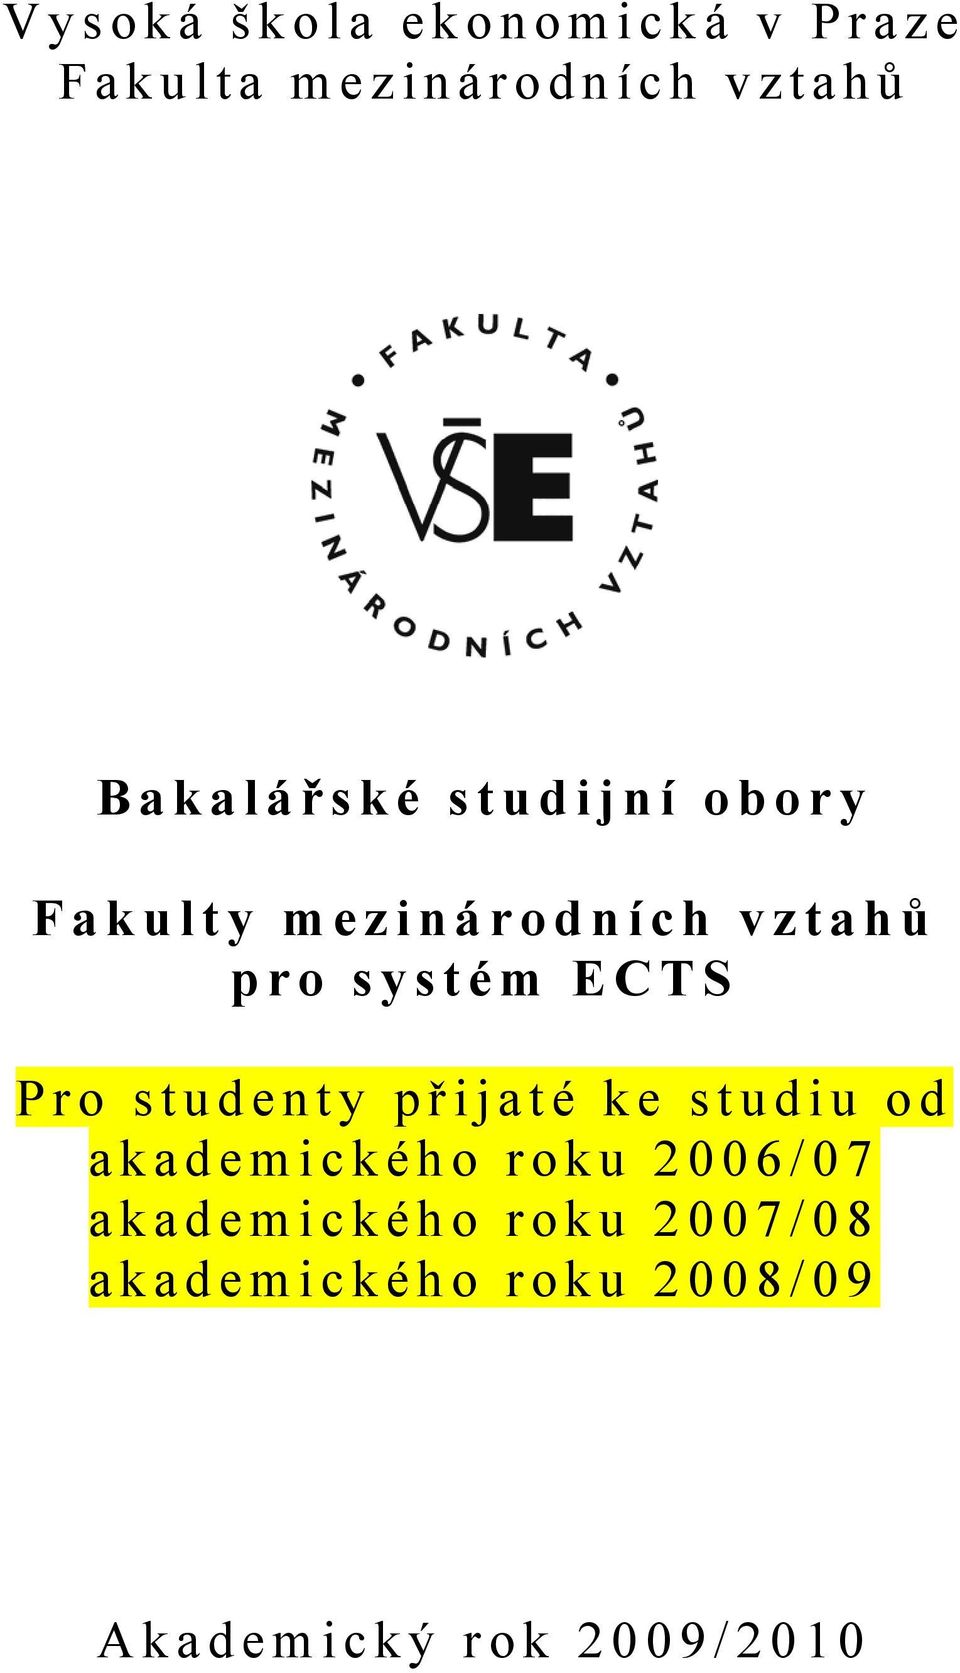 ECTS Pro studenty př ijaté ke studiu od akademického roku 2006/07